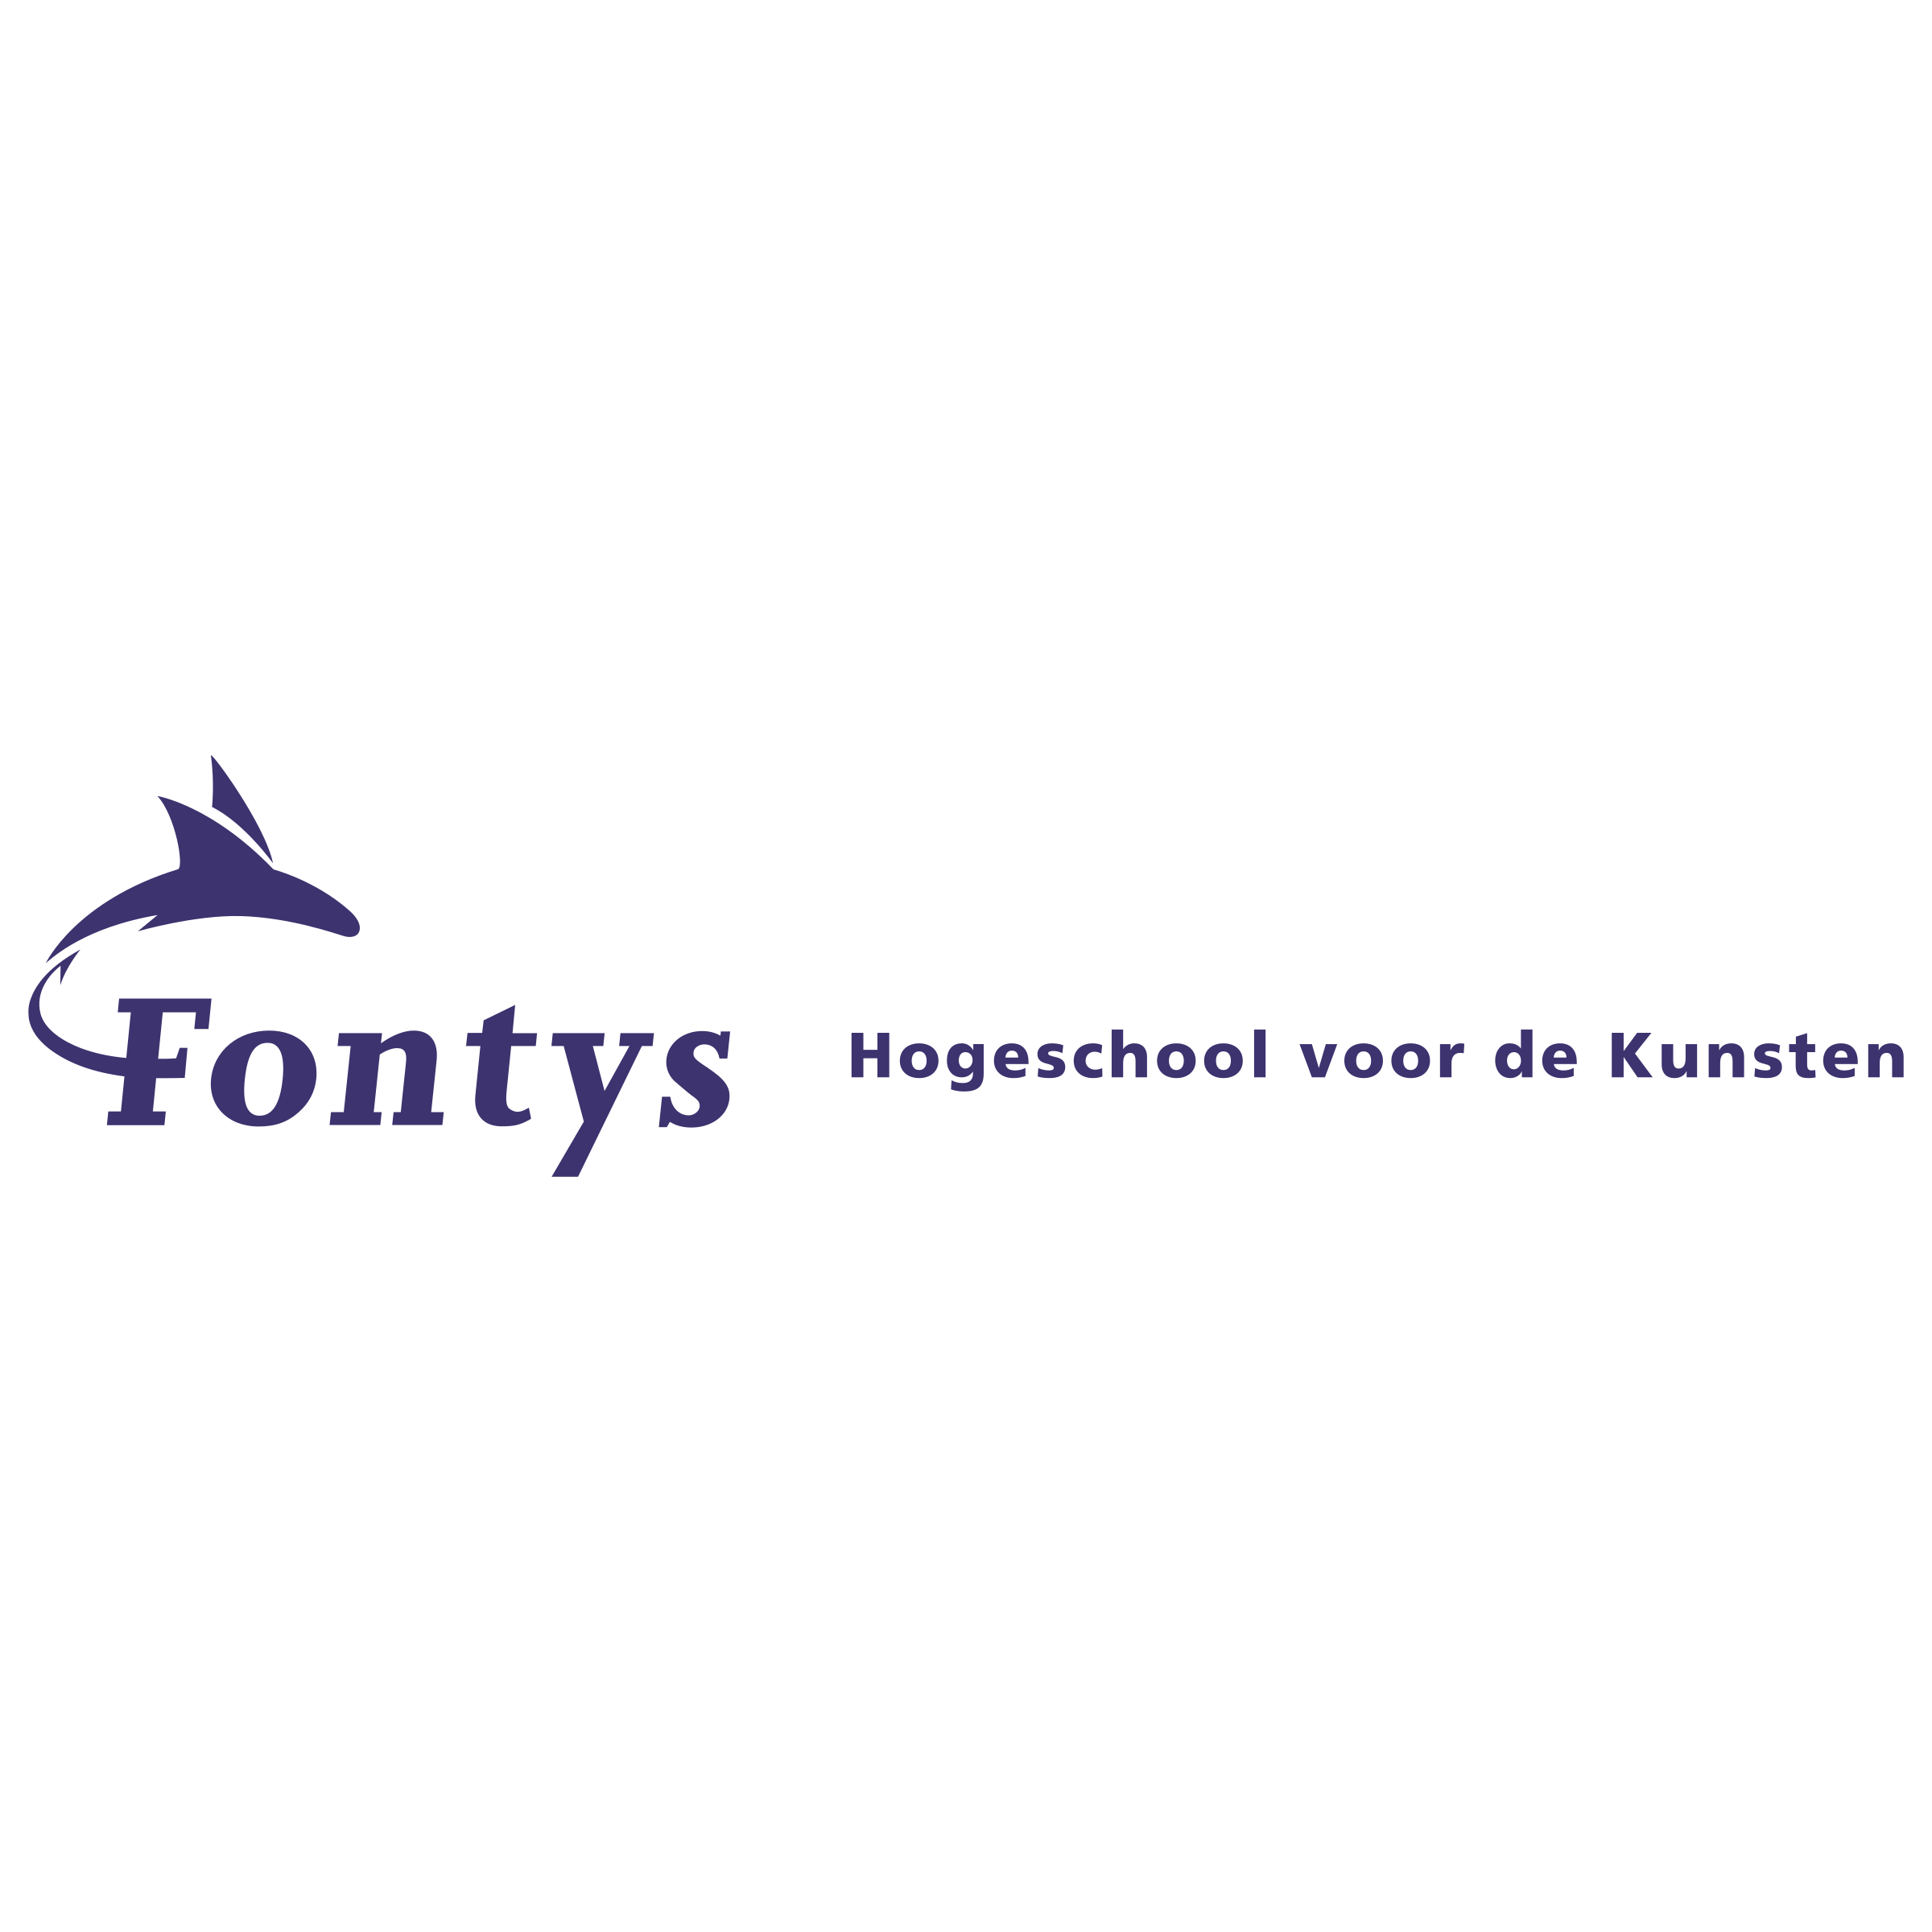 fontys-hogeschool-voor-de-kunsten-logo-png-transparent